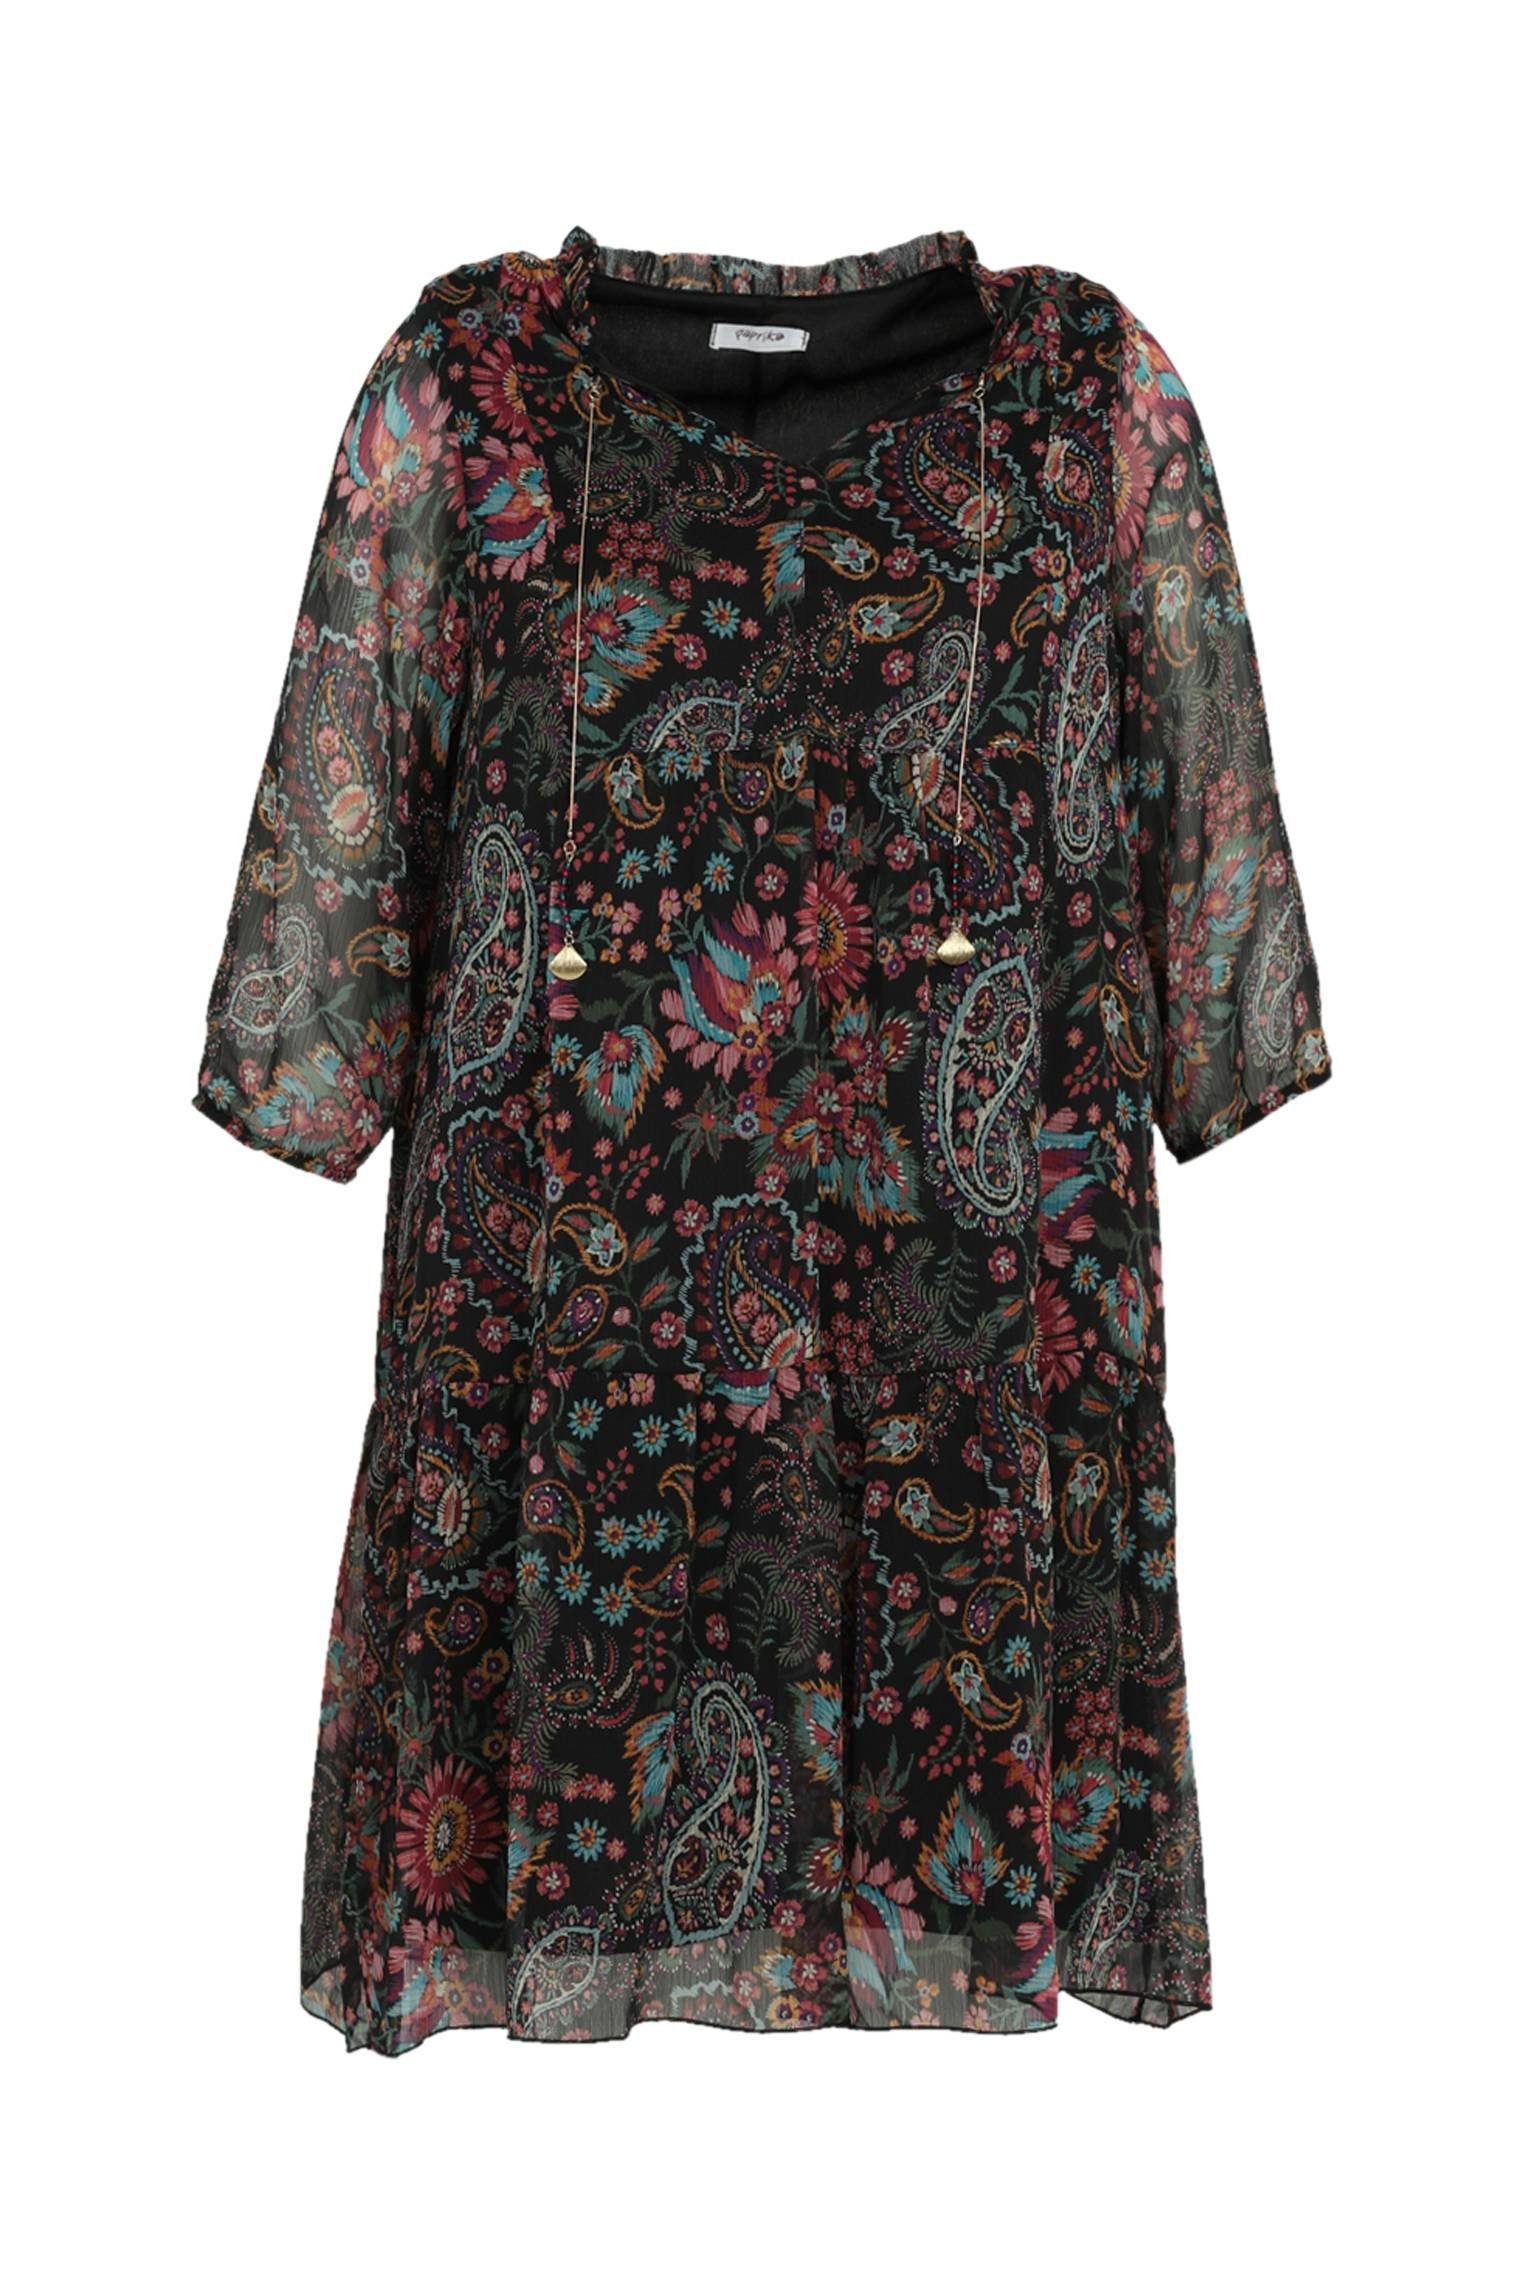 Paprika A-Linien-Kleid Kurzes Kleid Mit Blumenmuster Und Schmuckbesatz